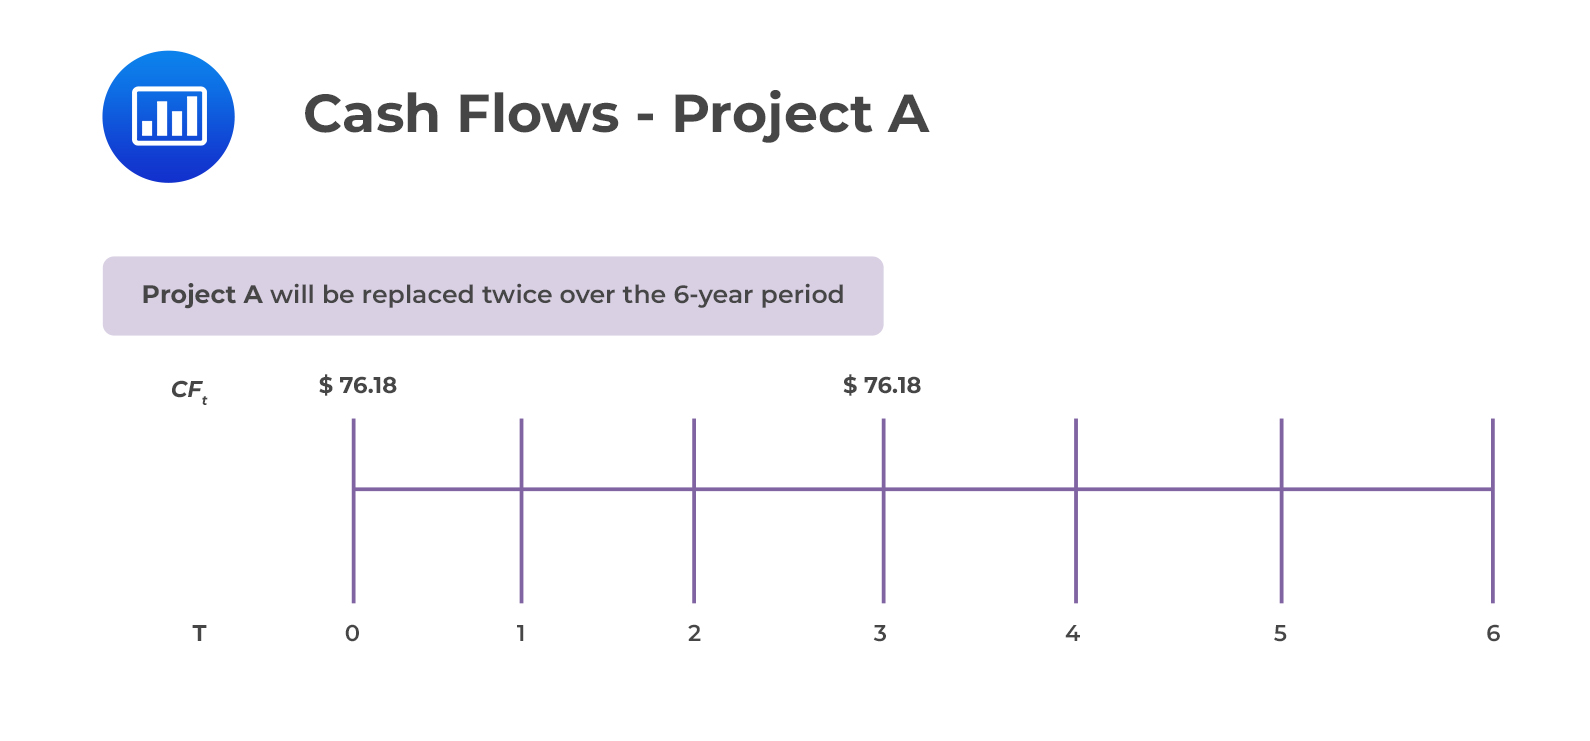 Cash Flows - Project A